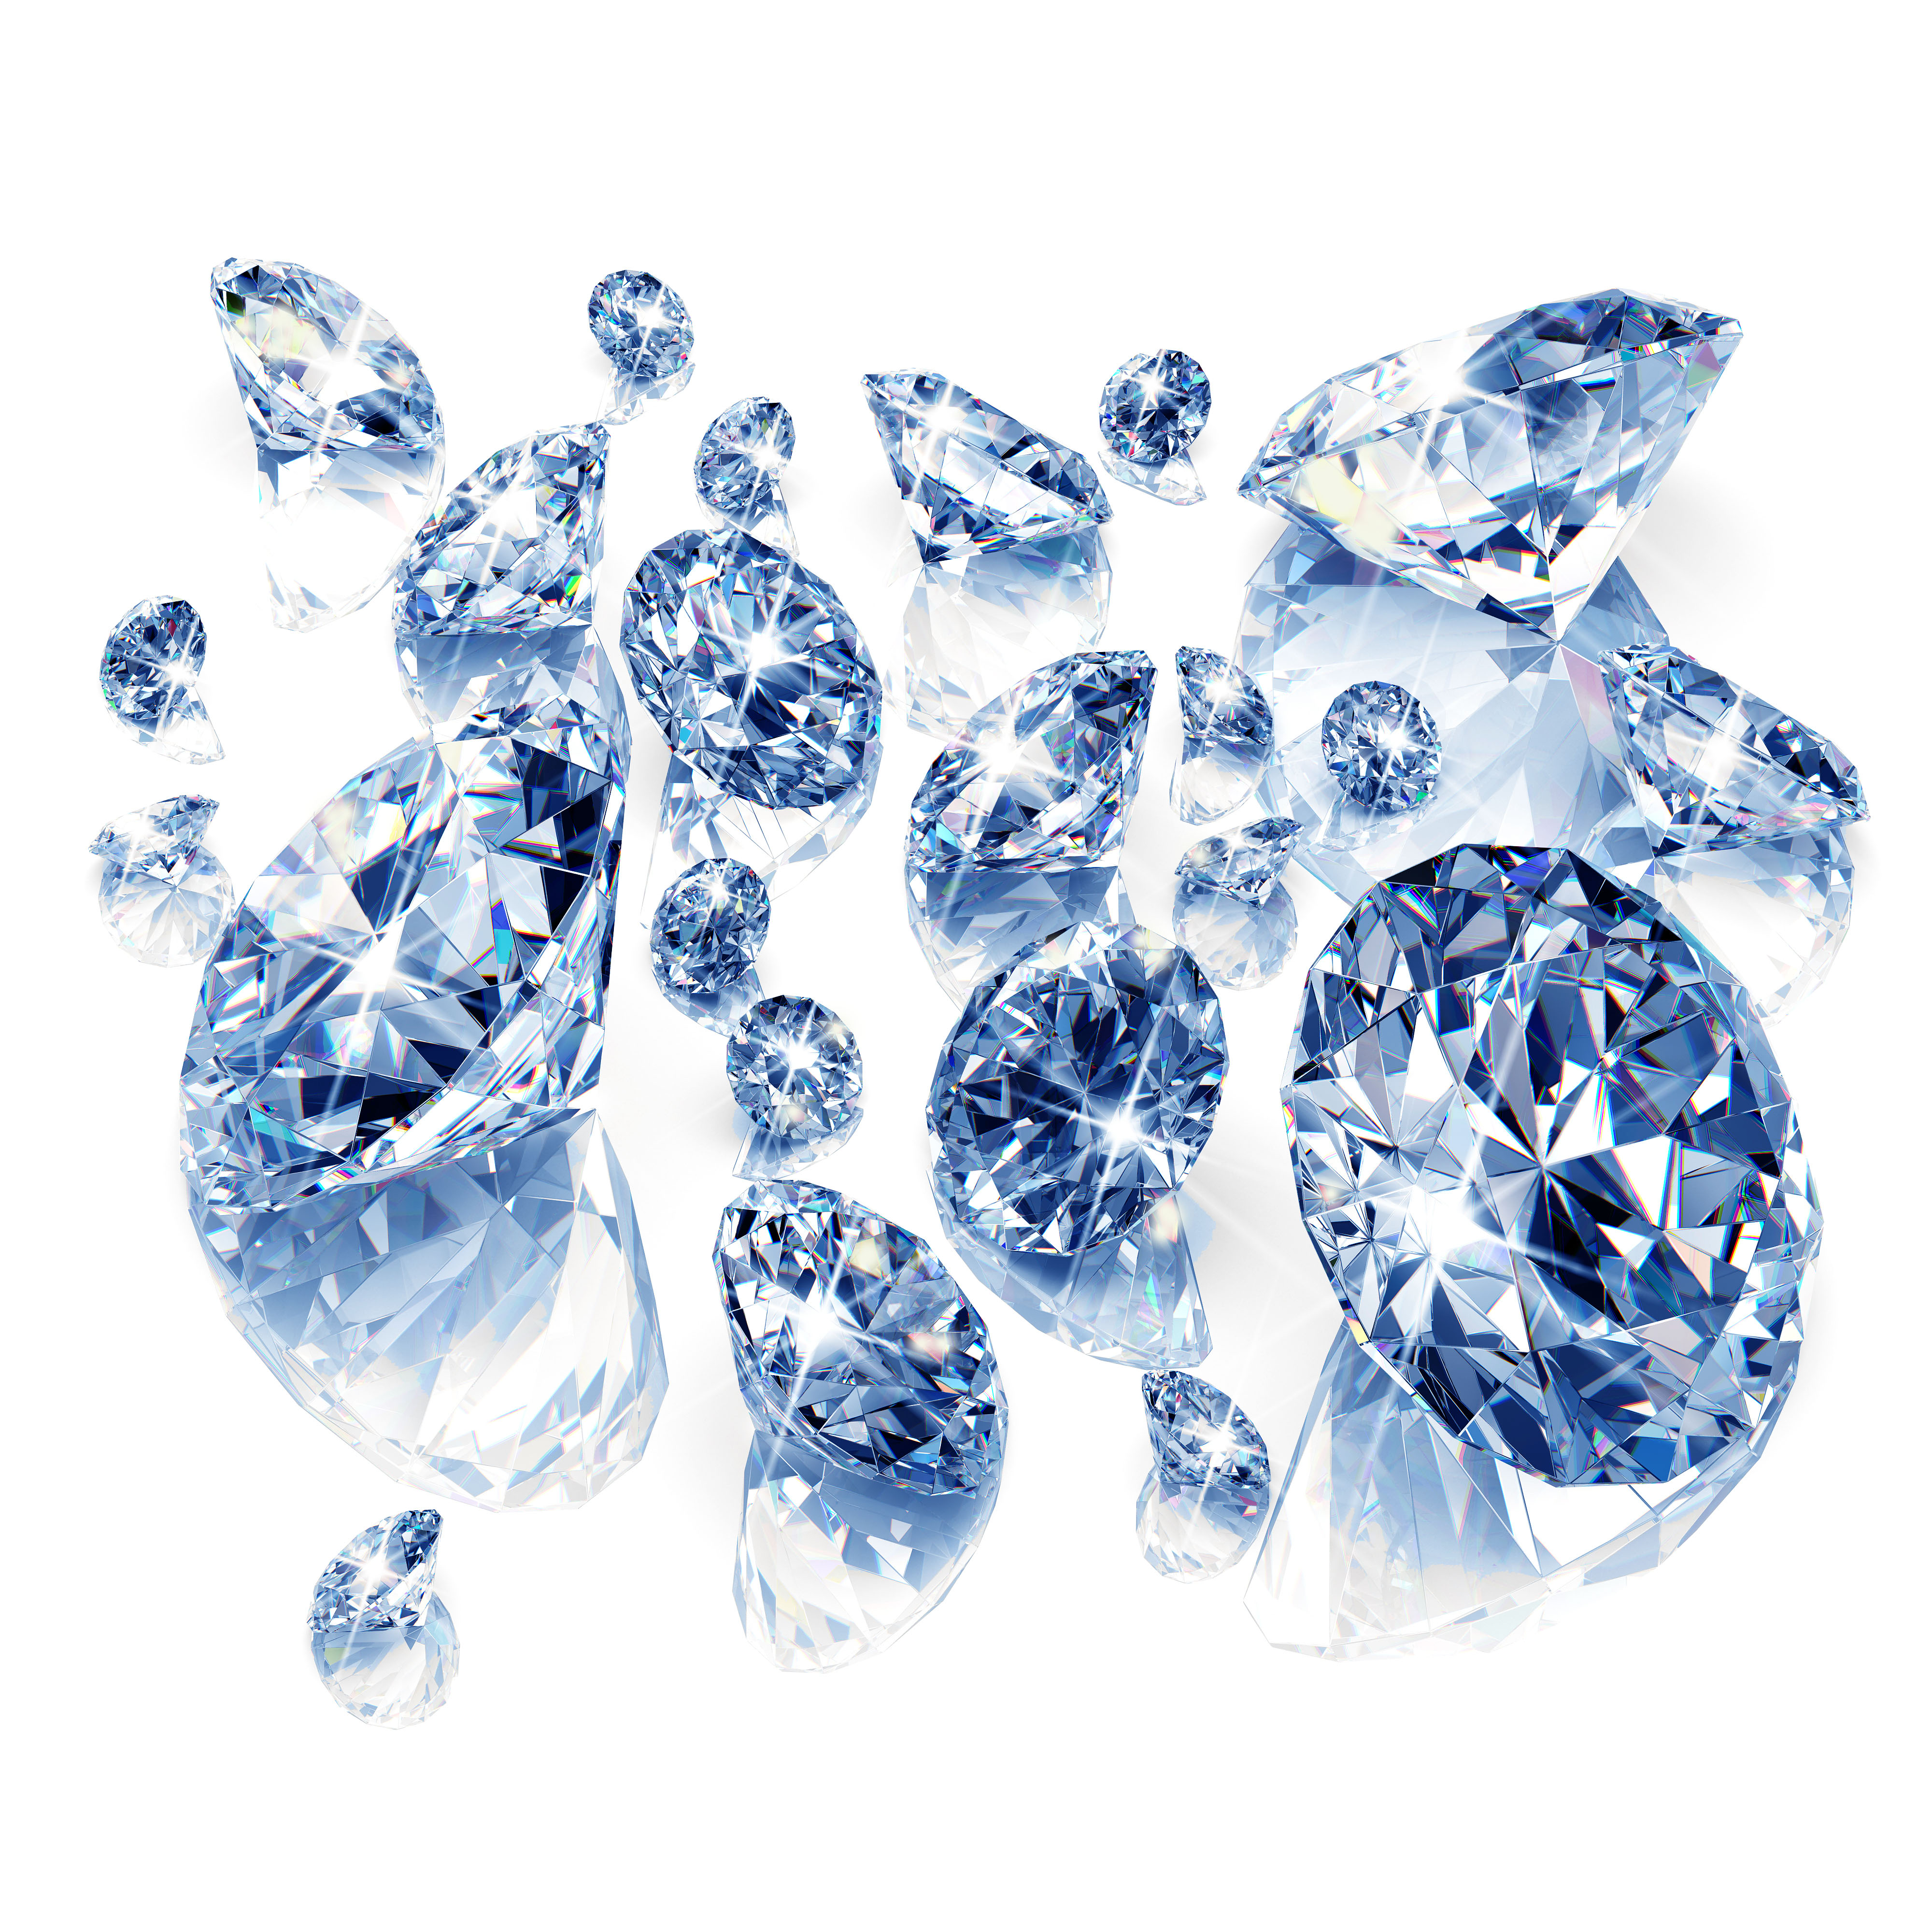 blue_diamonds_feature.jpg